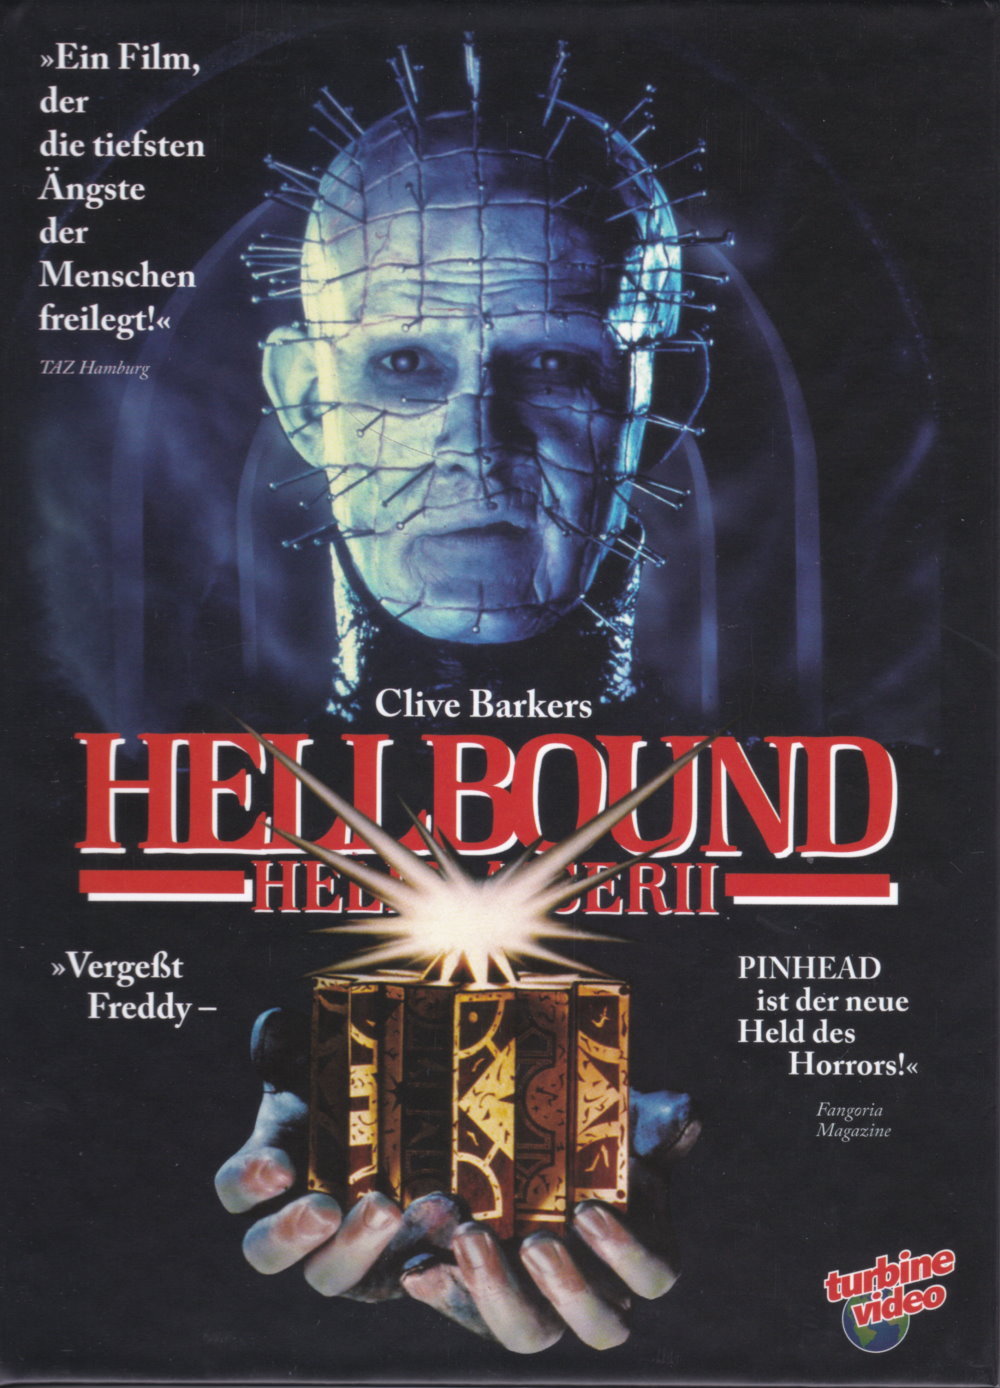 Cover - Hellbound - Hellraiser II.jpg